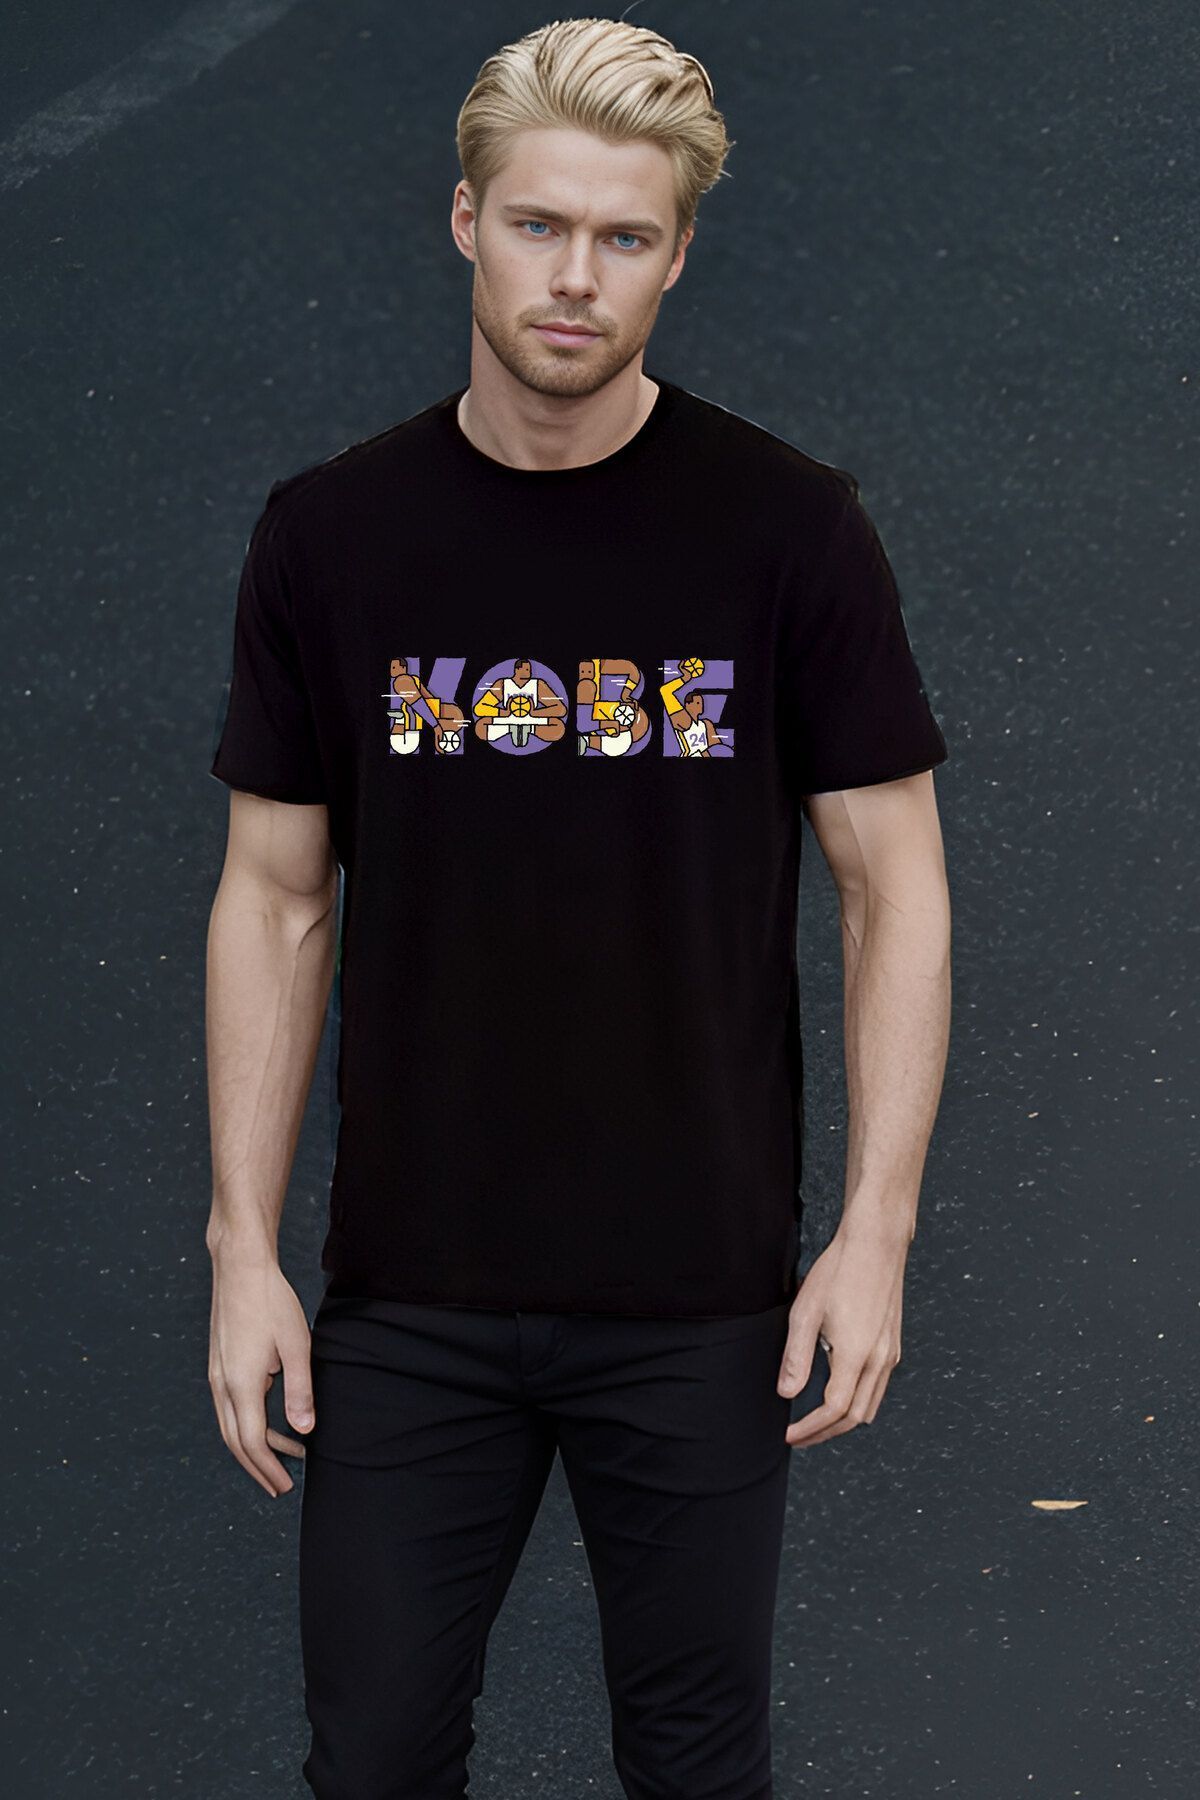 The Baski Siyah Unisex Basketbol Kobe Bryant Yazılı Baskılı Cool Kısa Kollu T-shirt